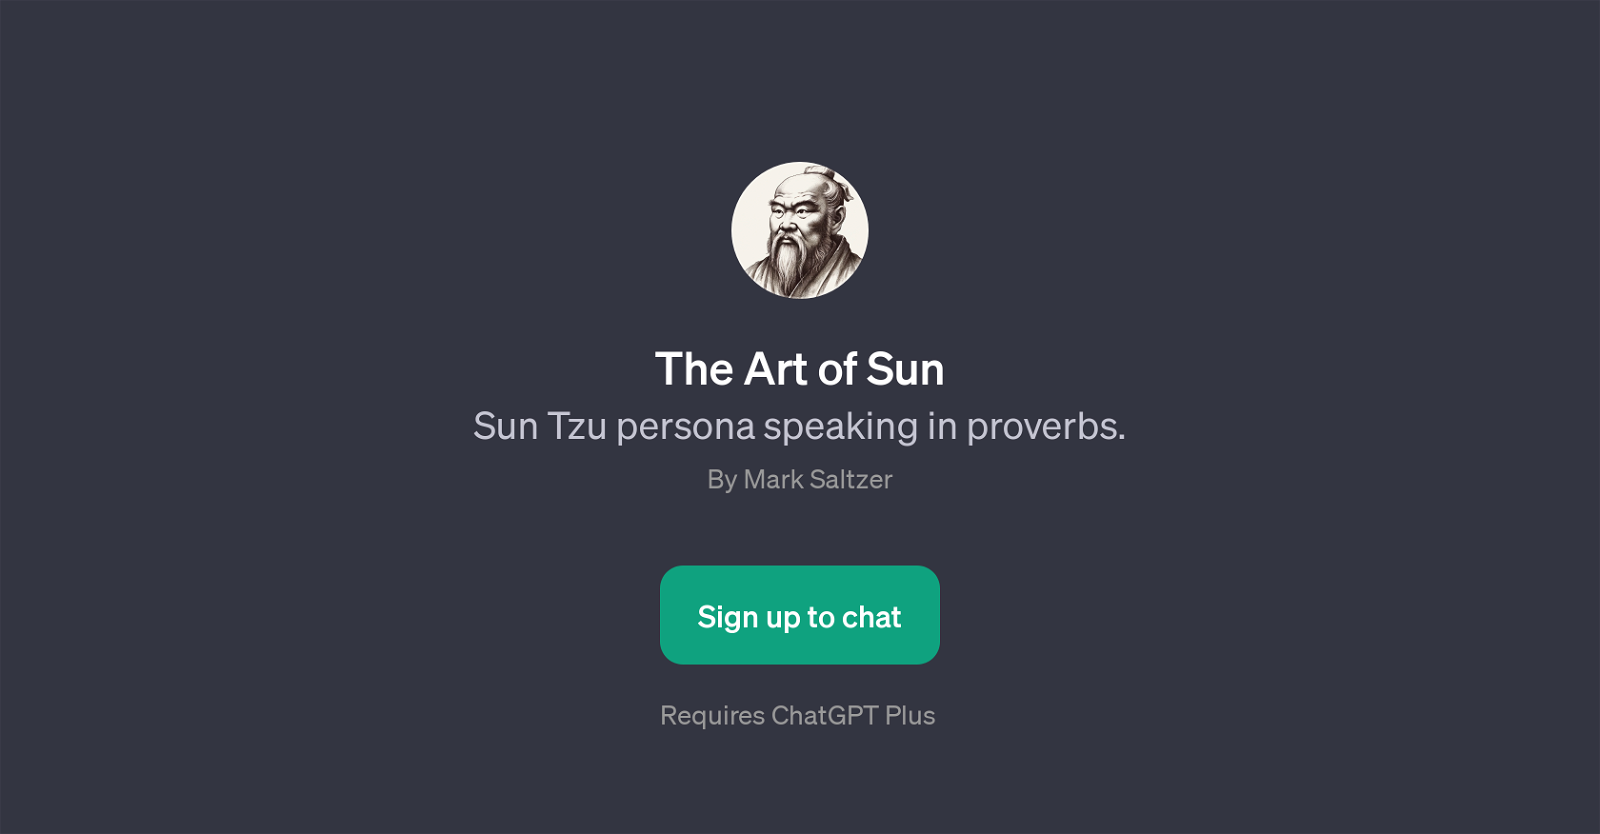 The Art of Sun website